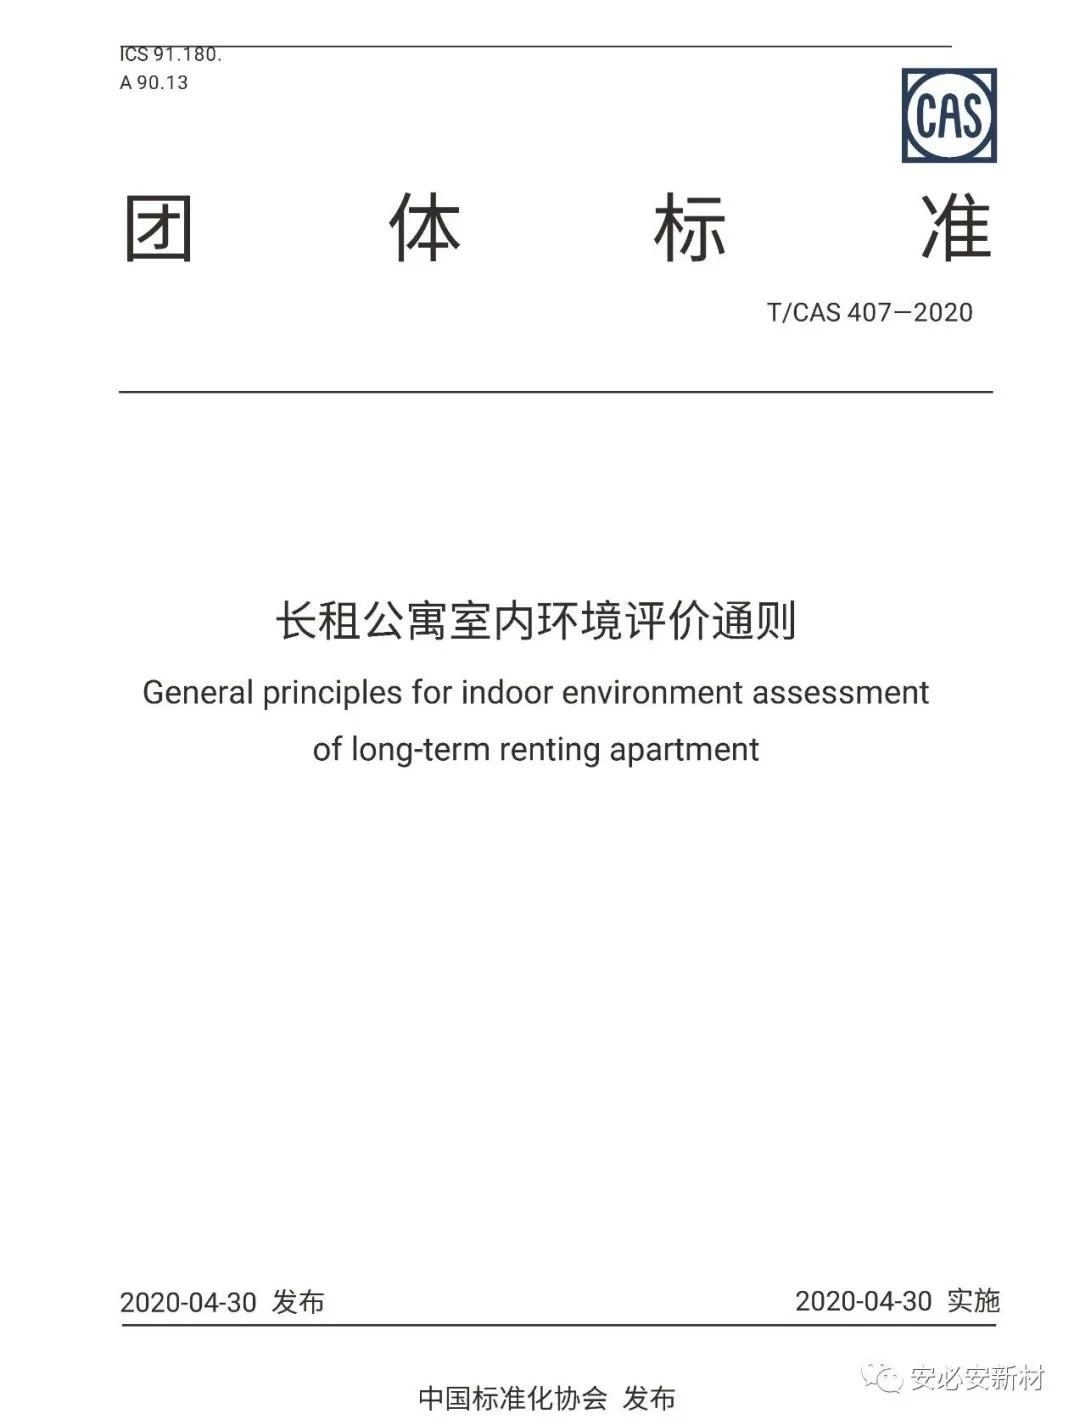 安必安参编的《长租公寓室内环境评价通则》正式发布